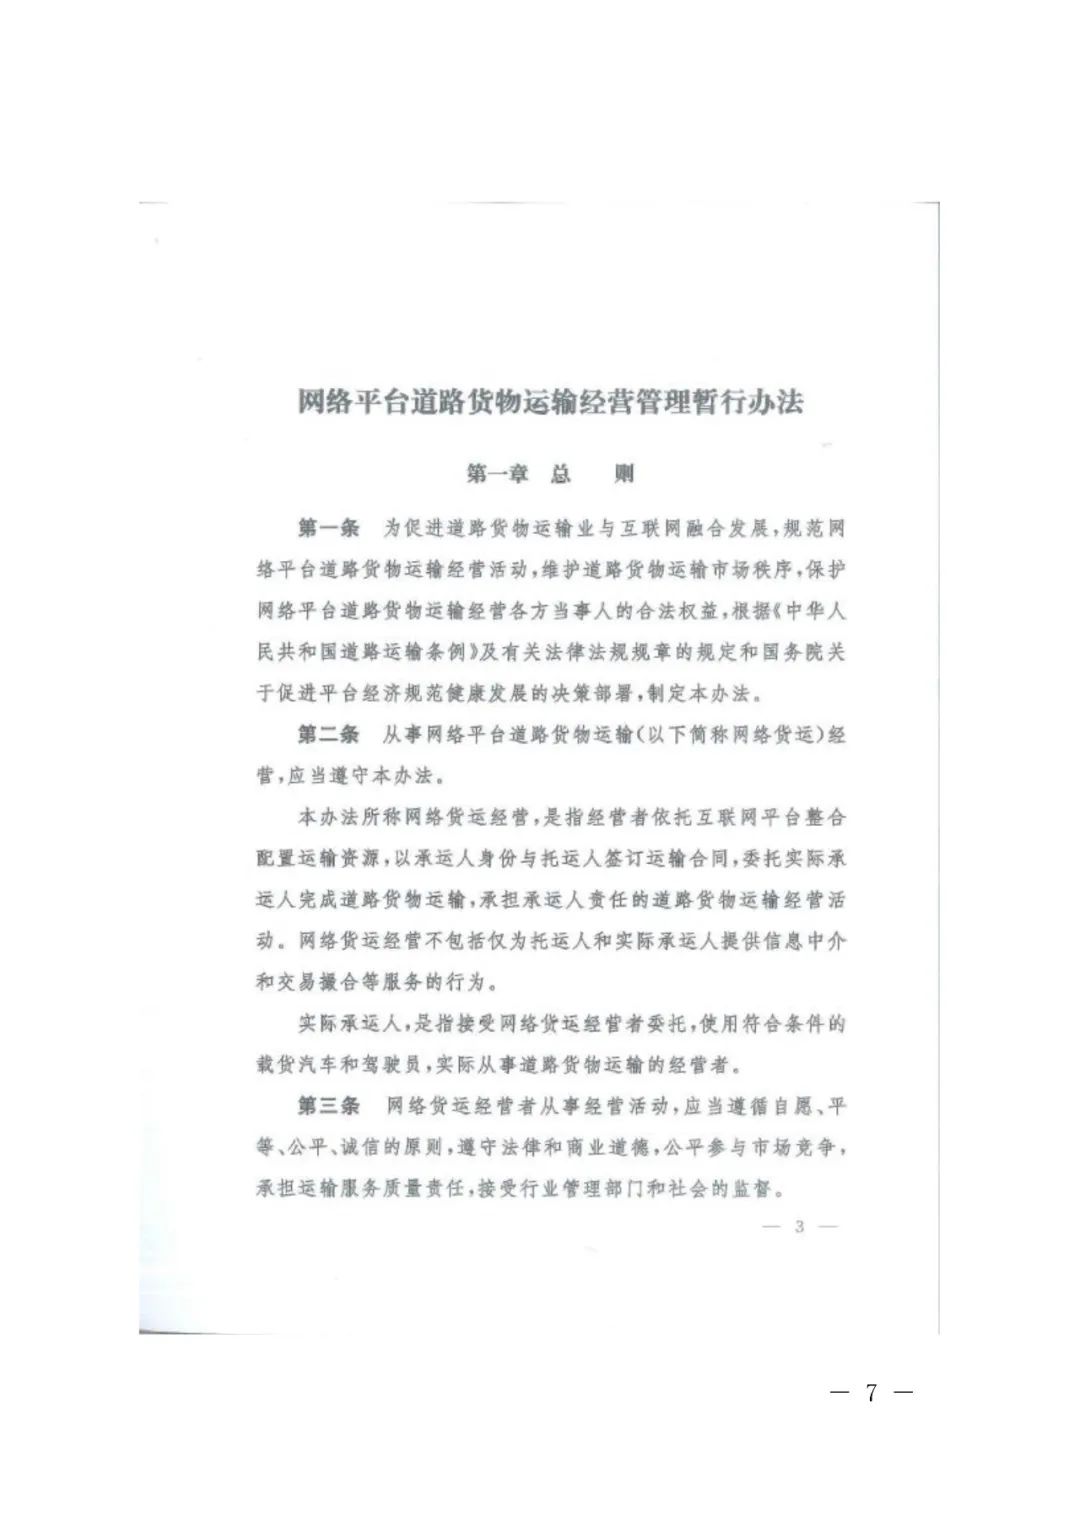 【浙江】关于开展网络平台道路货物运输经营管理工作的通知(图7)